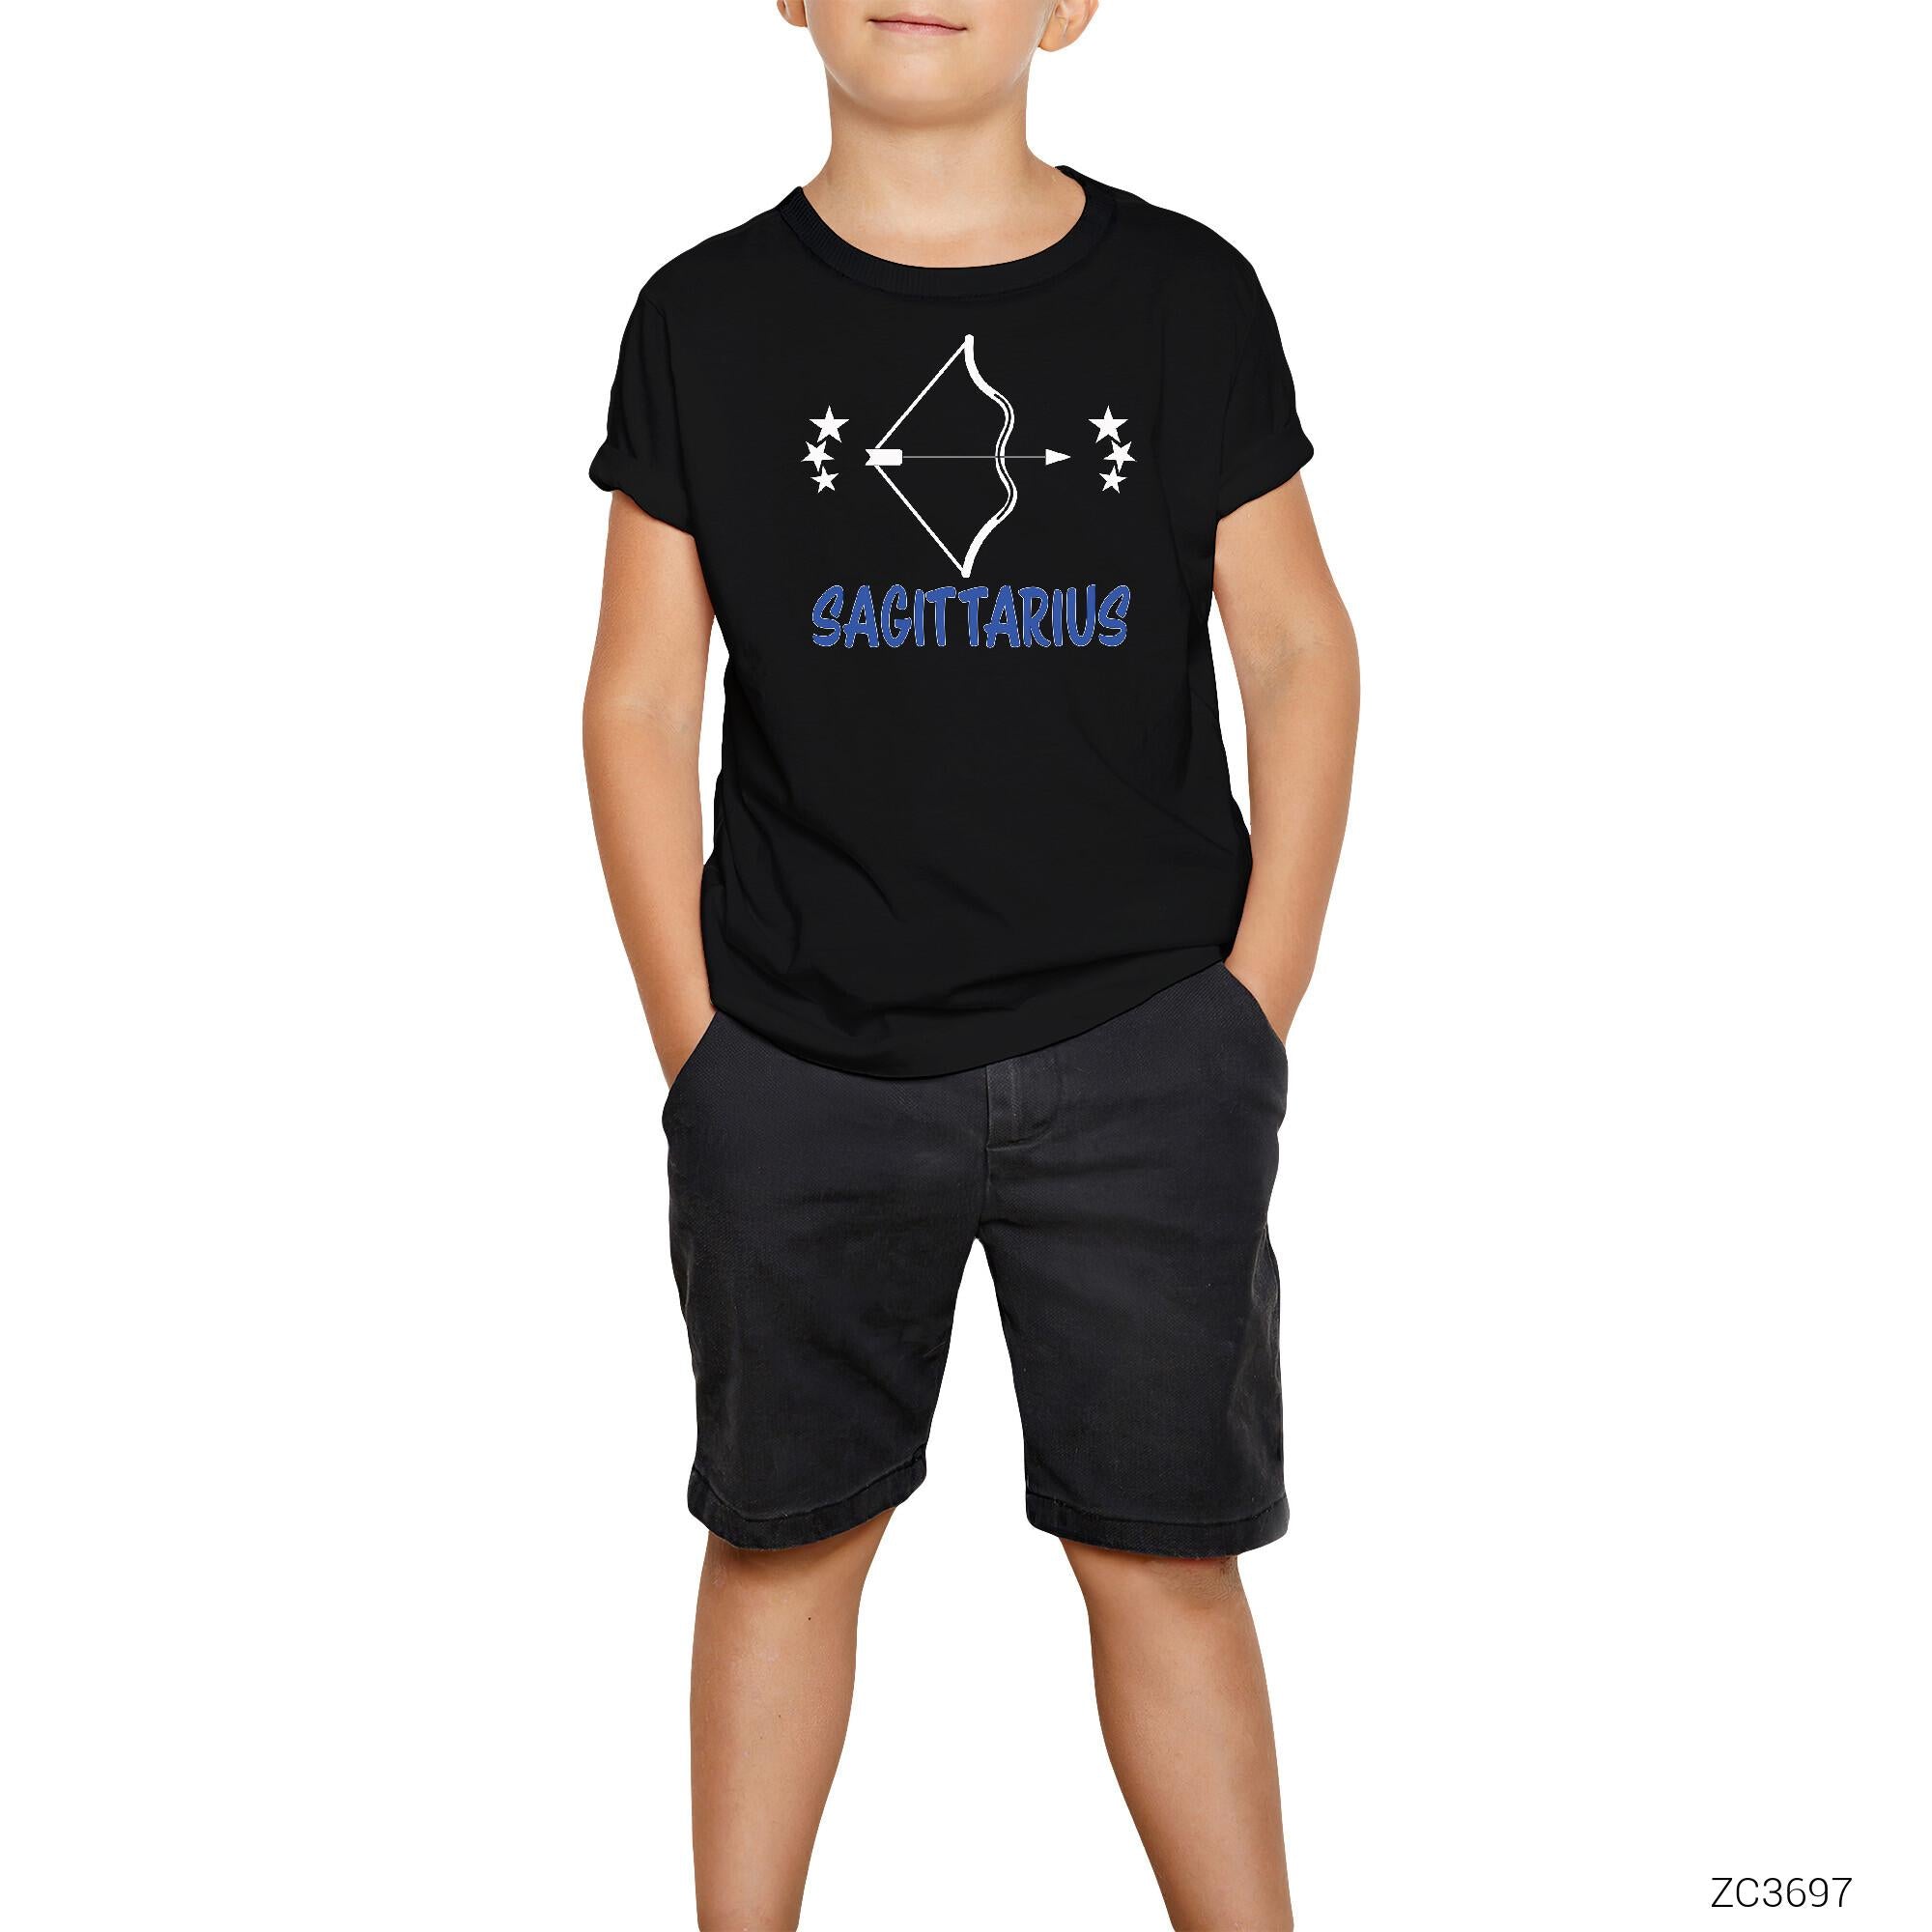 Yay Burcu Sagittarius Siyah Çocuk Tişört